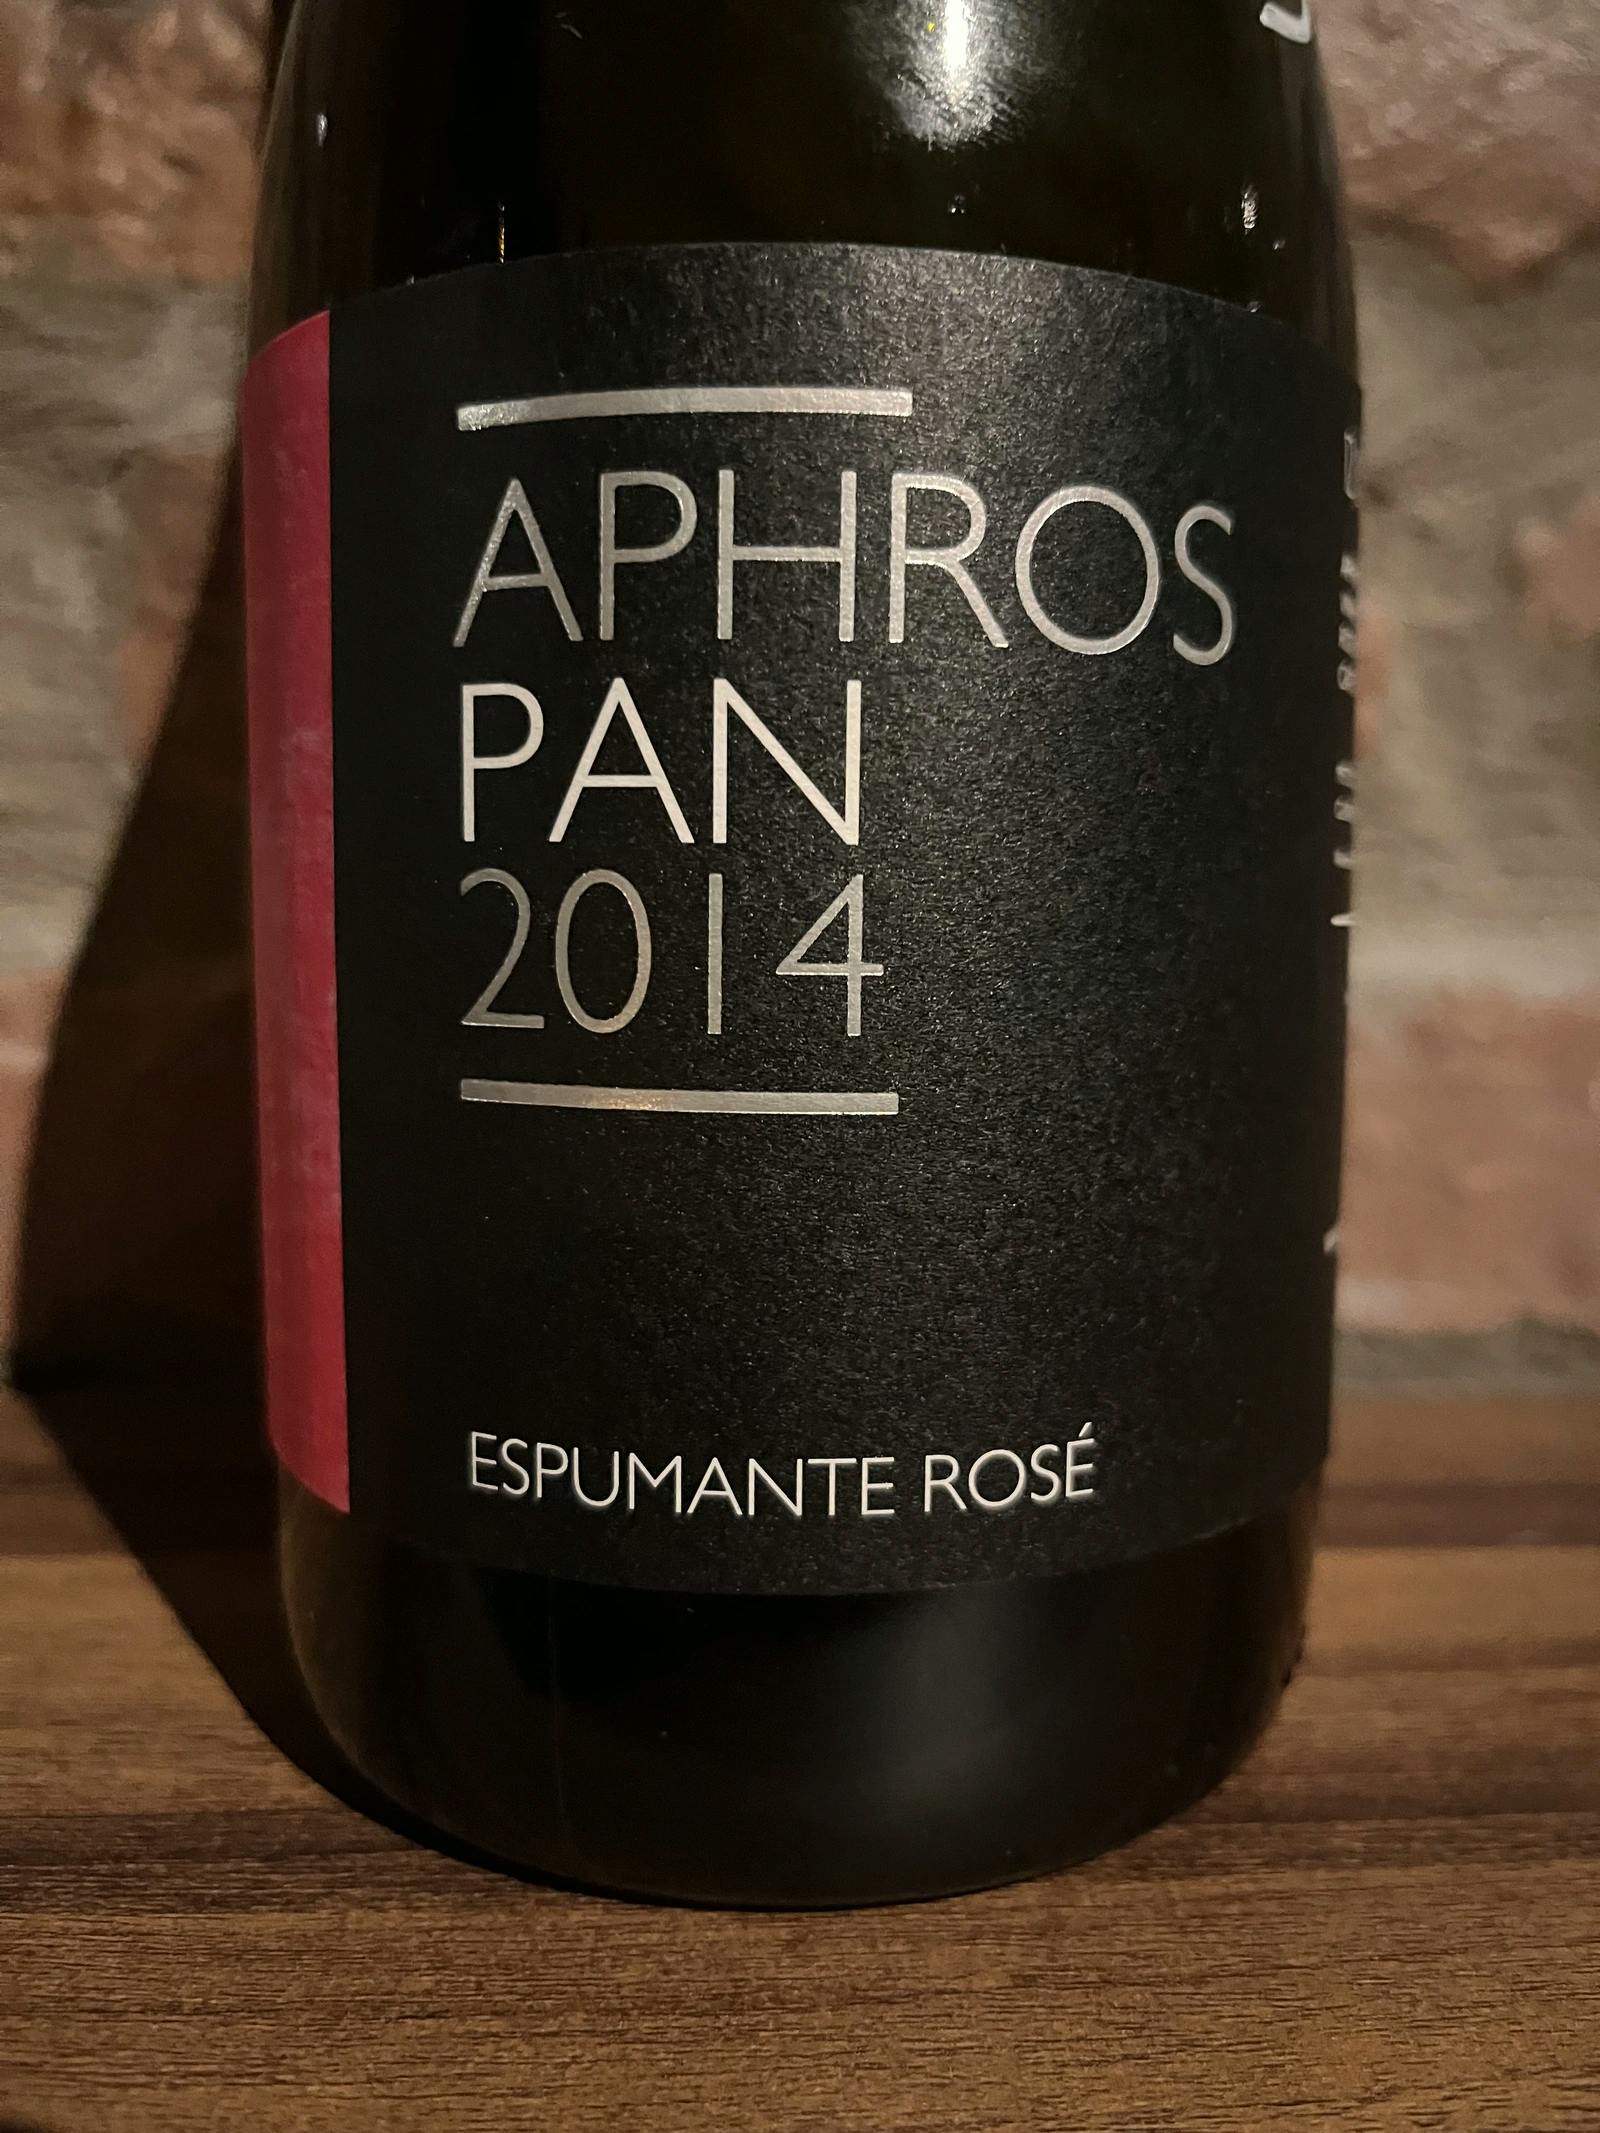 Aphros Pan Espumante Rosé 2014